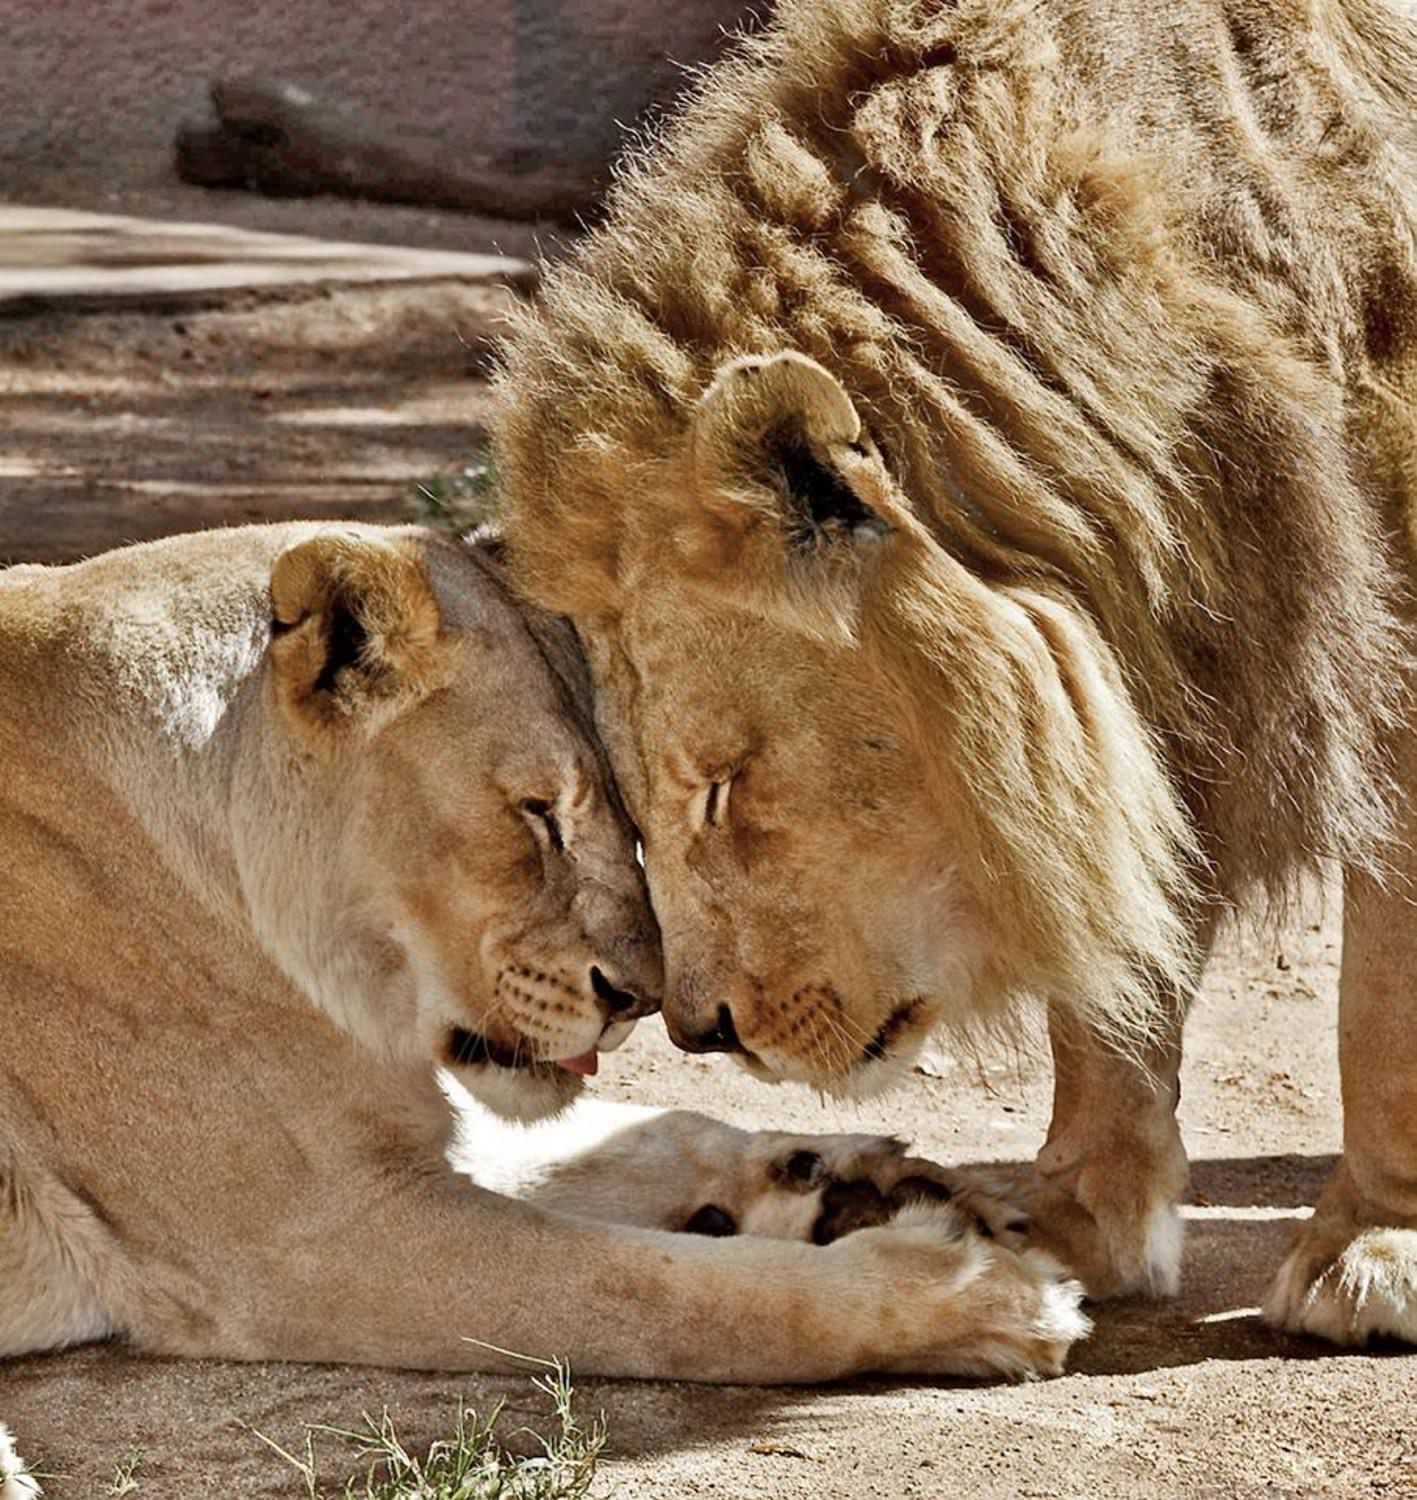 دو شیر آفریقایی عاشق در باغ وحش/ هوبرت و کالیسا